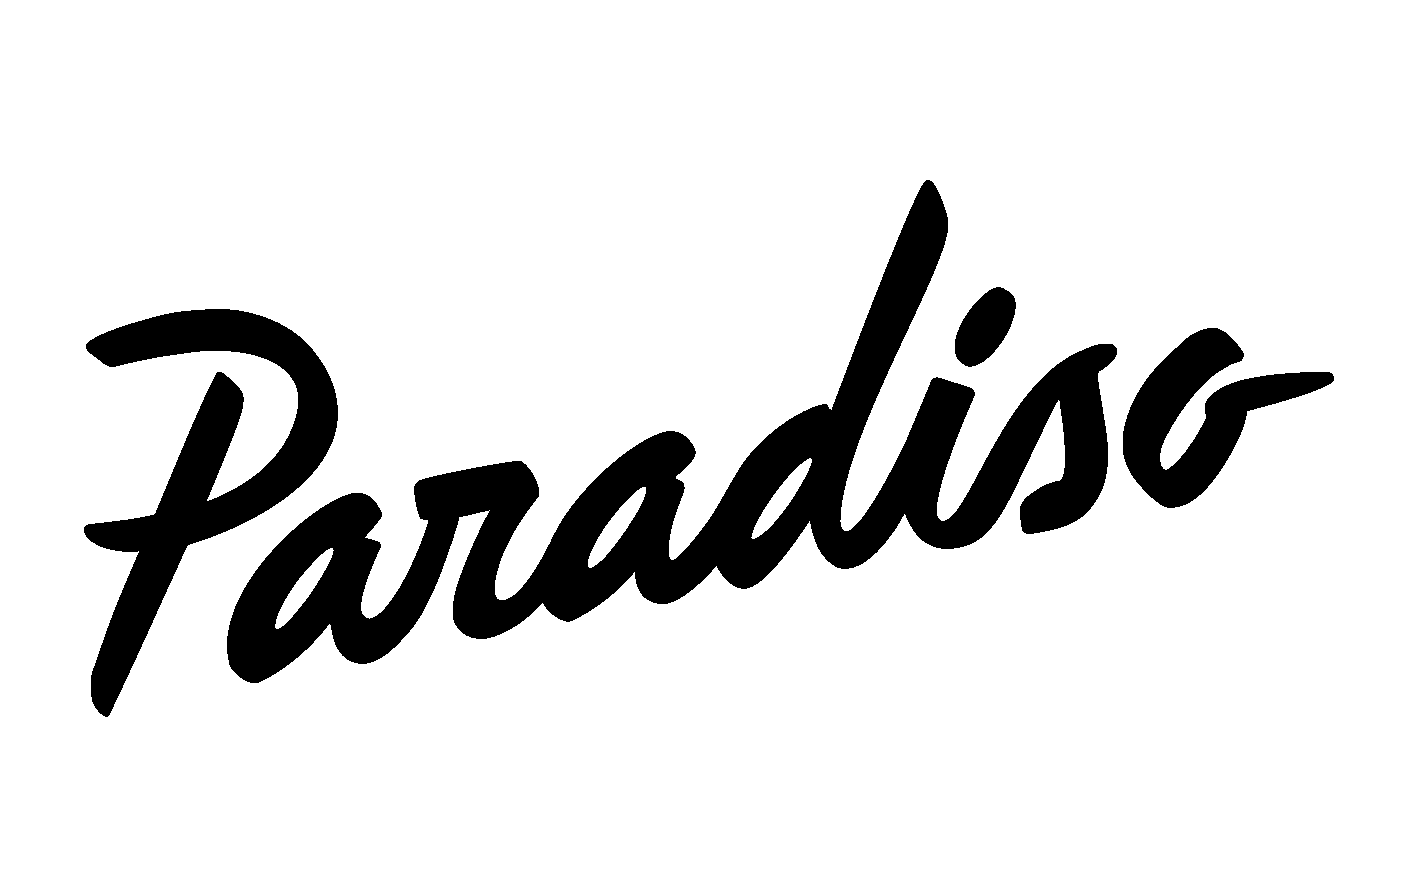 The logo of Paradiso